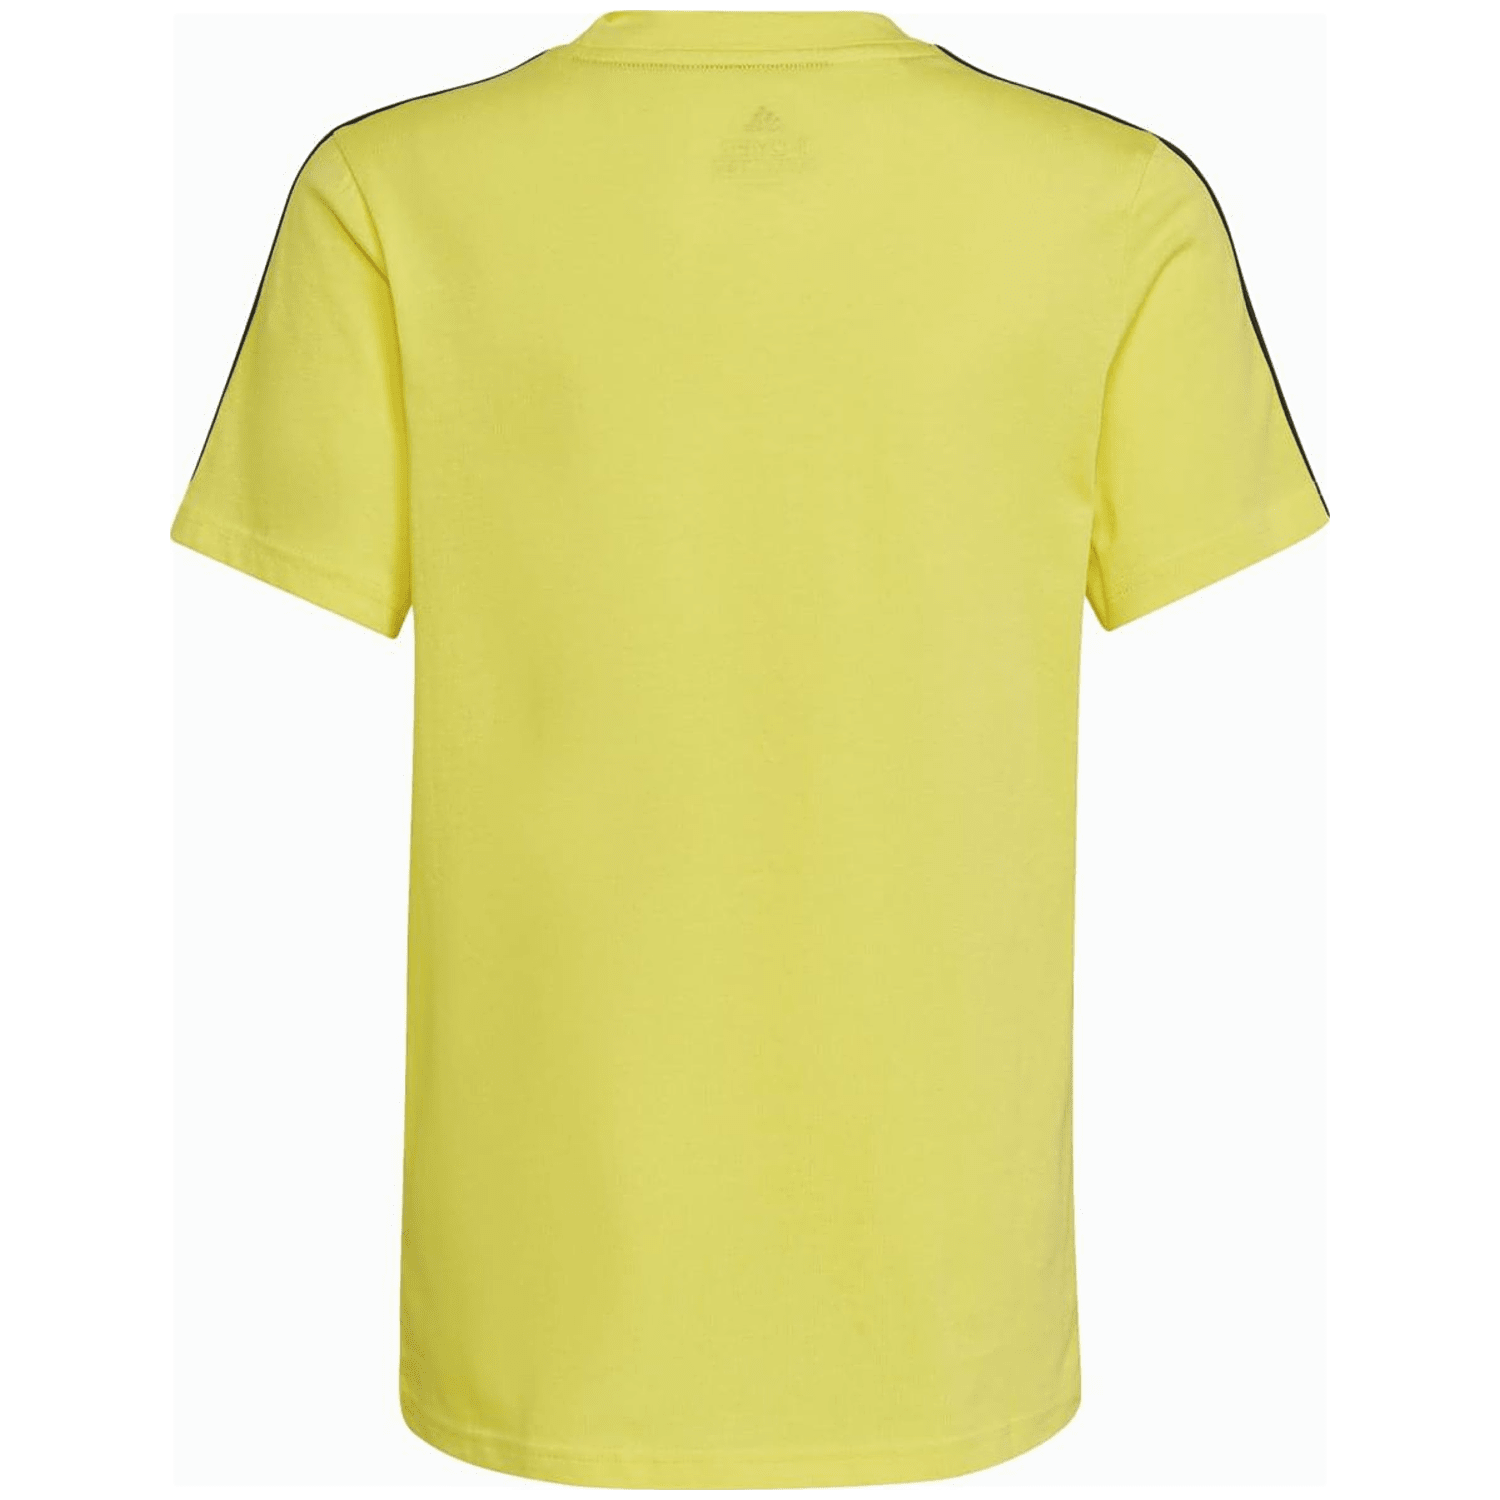 Adidas Essentials 3-Streifen T-Shirt Jungen